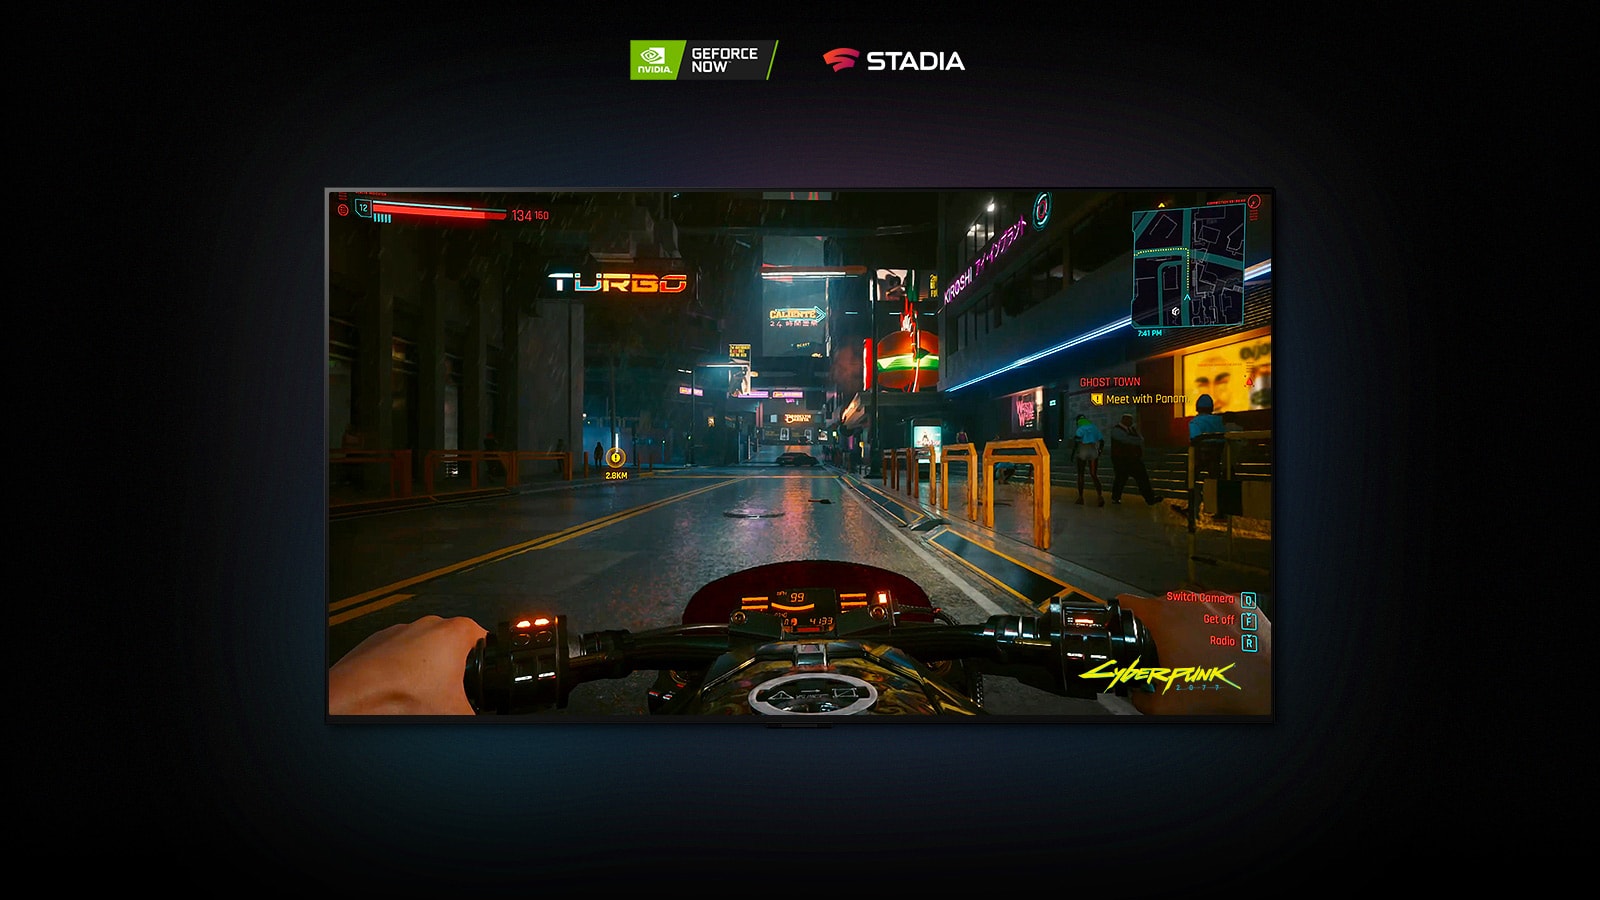 Intr-o scena din Cyberpunk 2077 prezentata pe un afisaj LG OLED, jucatorul conduce o motocicleta pe o strada iluminata cu neon.